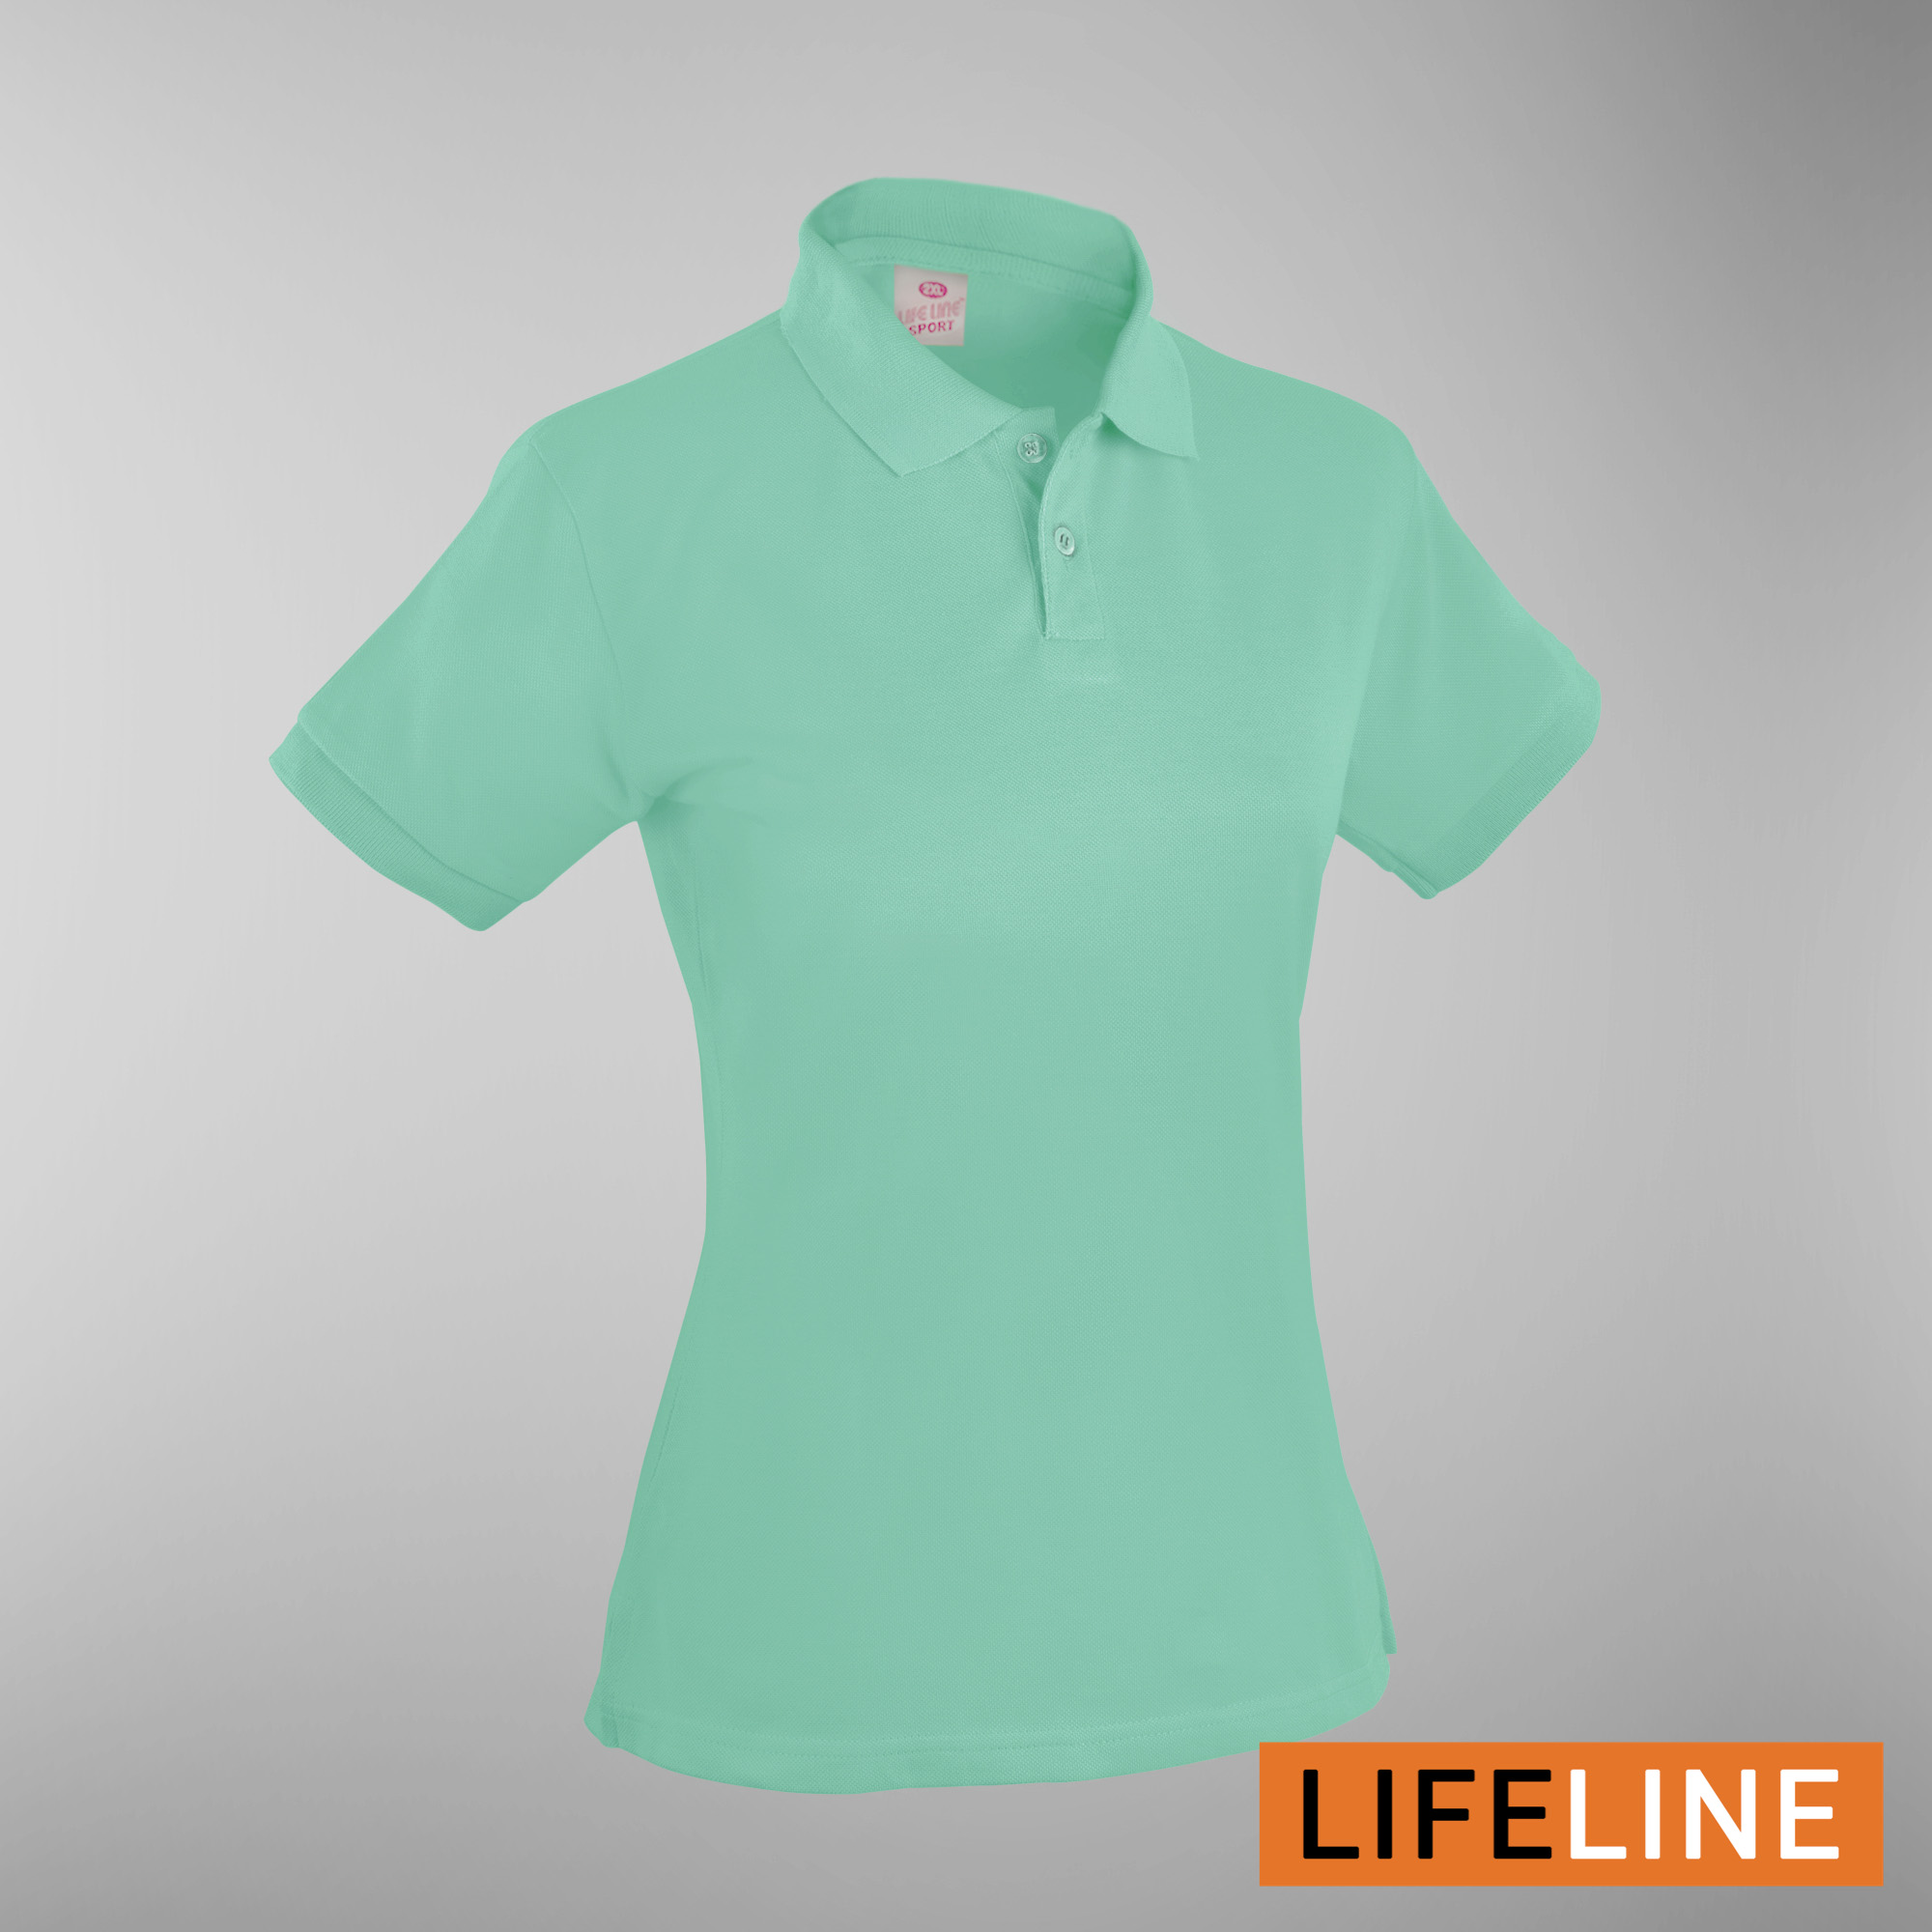 Lifeline Ladies’ Poloshirt (Misty Green) (Petite Sizes)